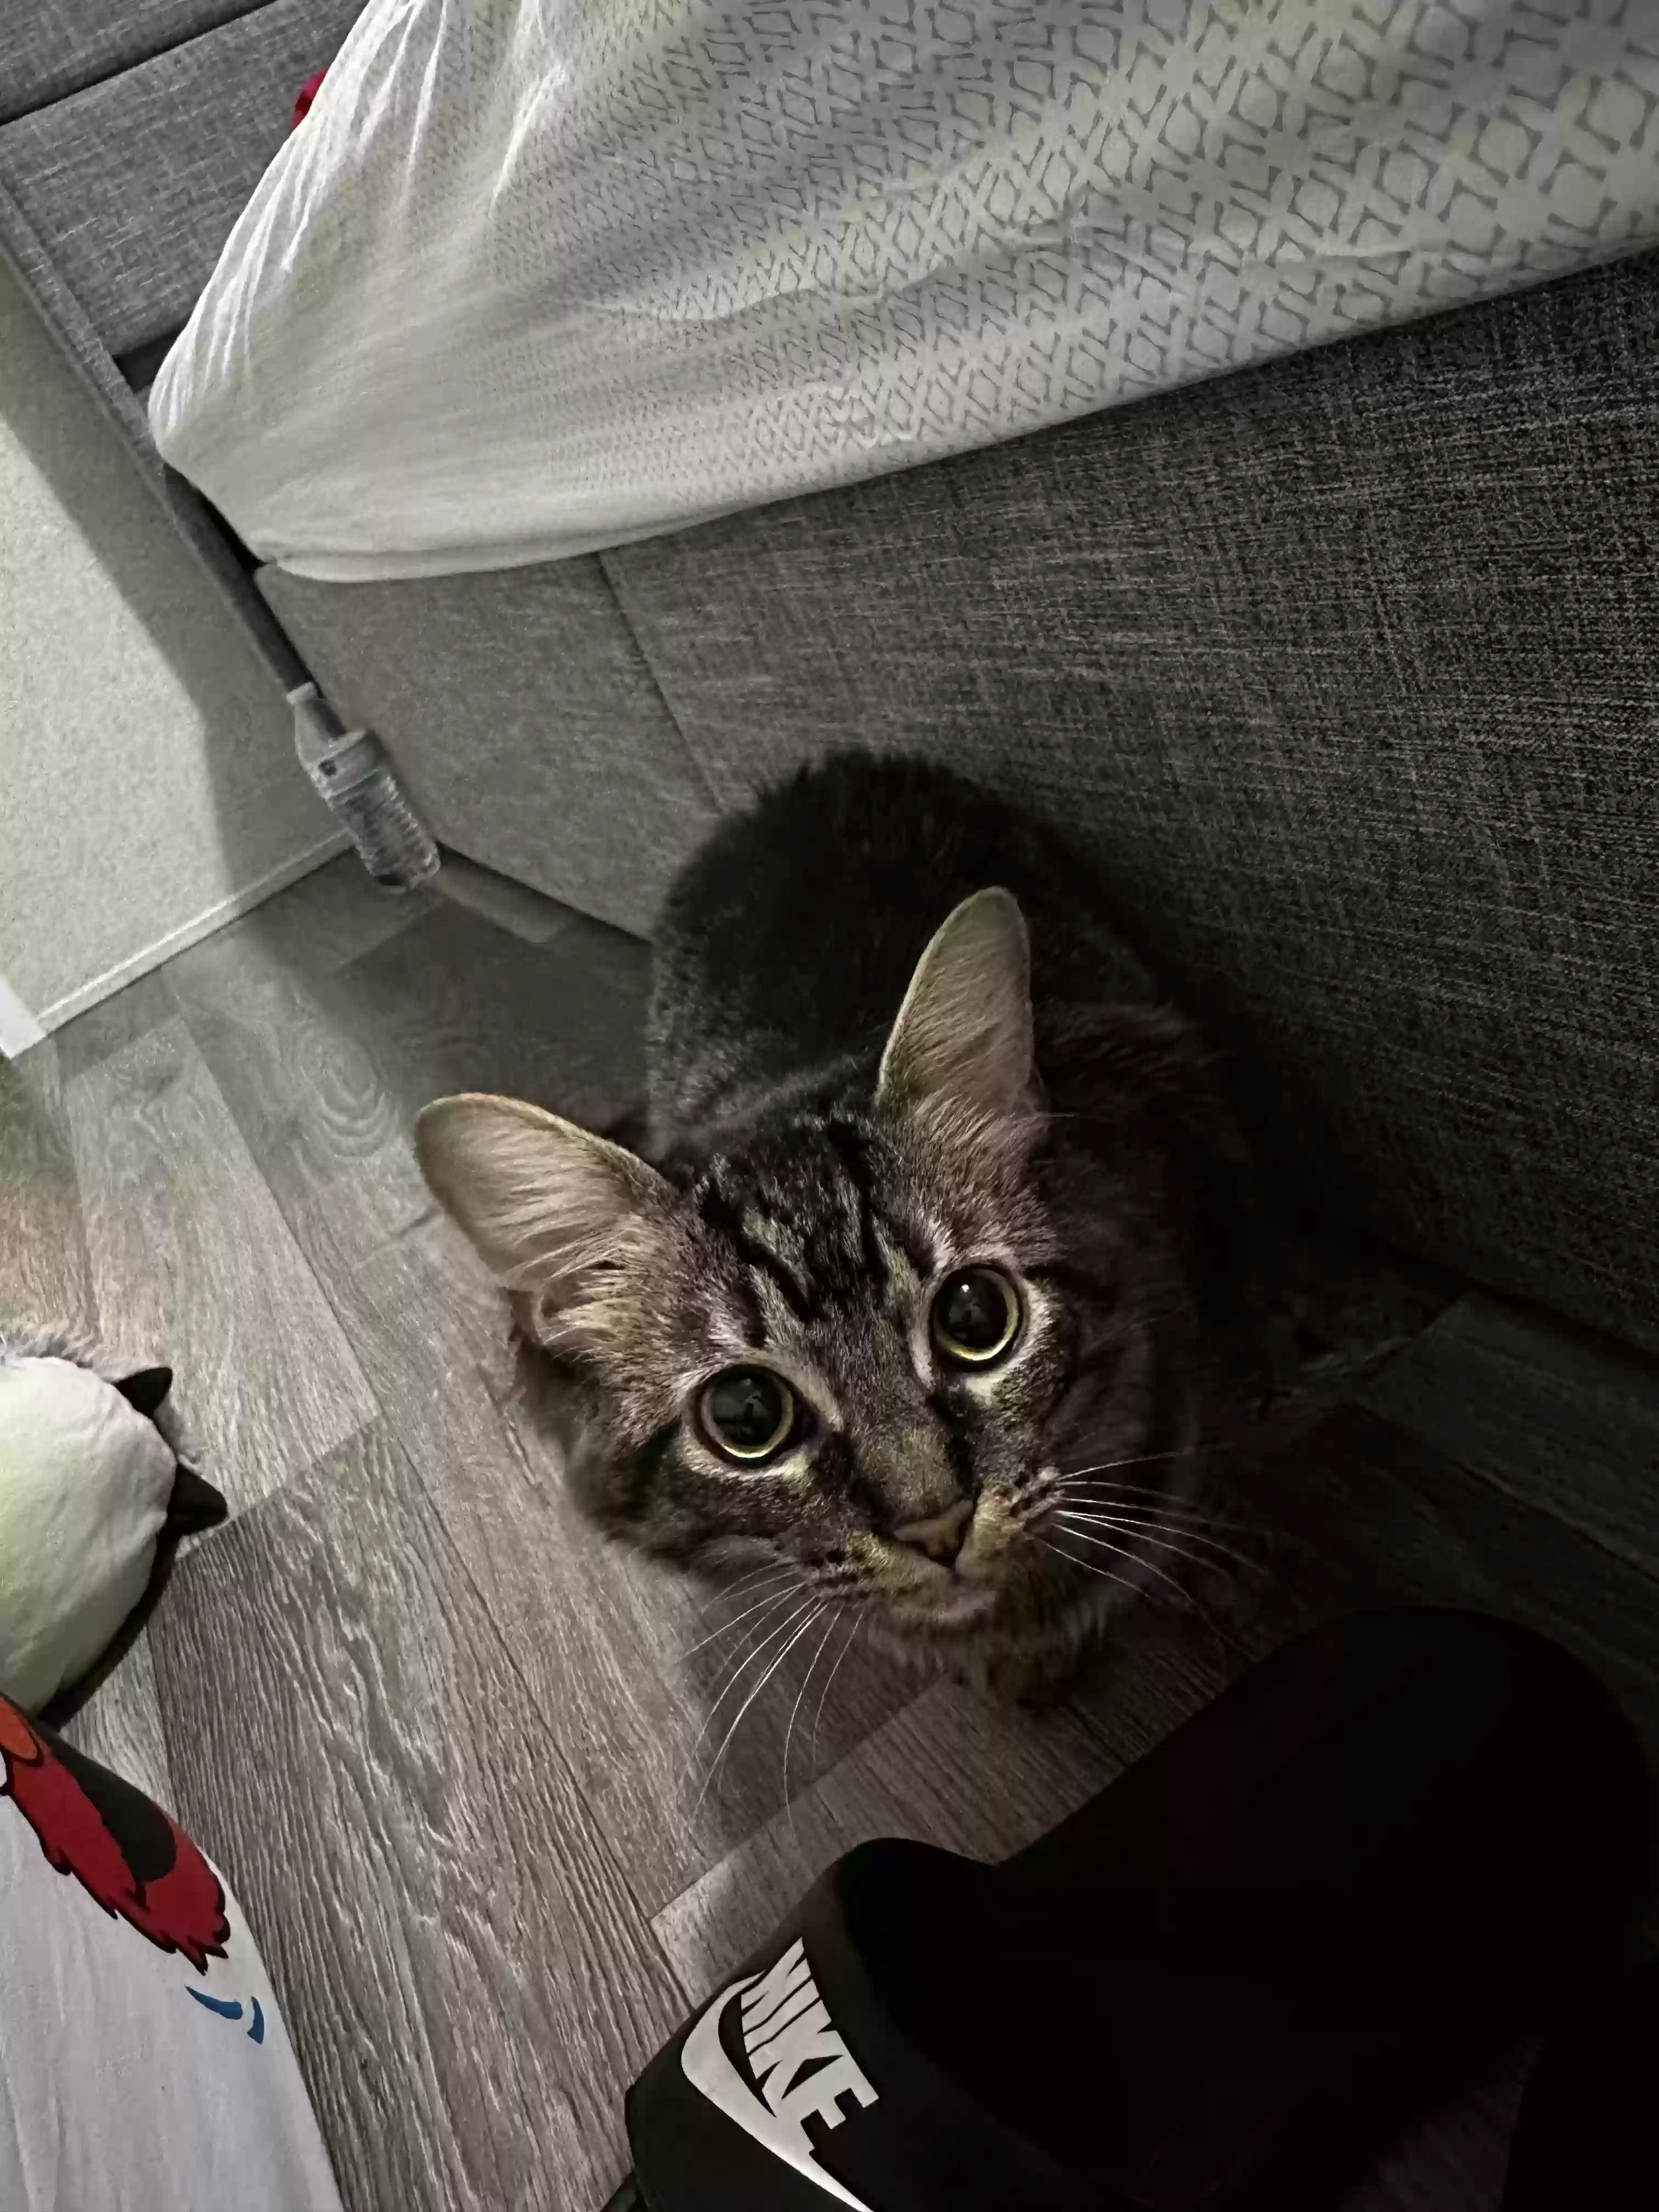 adoptable Cat in Hamilton,OH named Koko